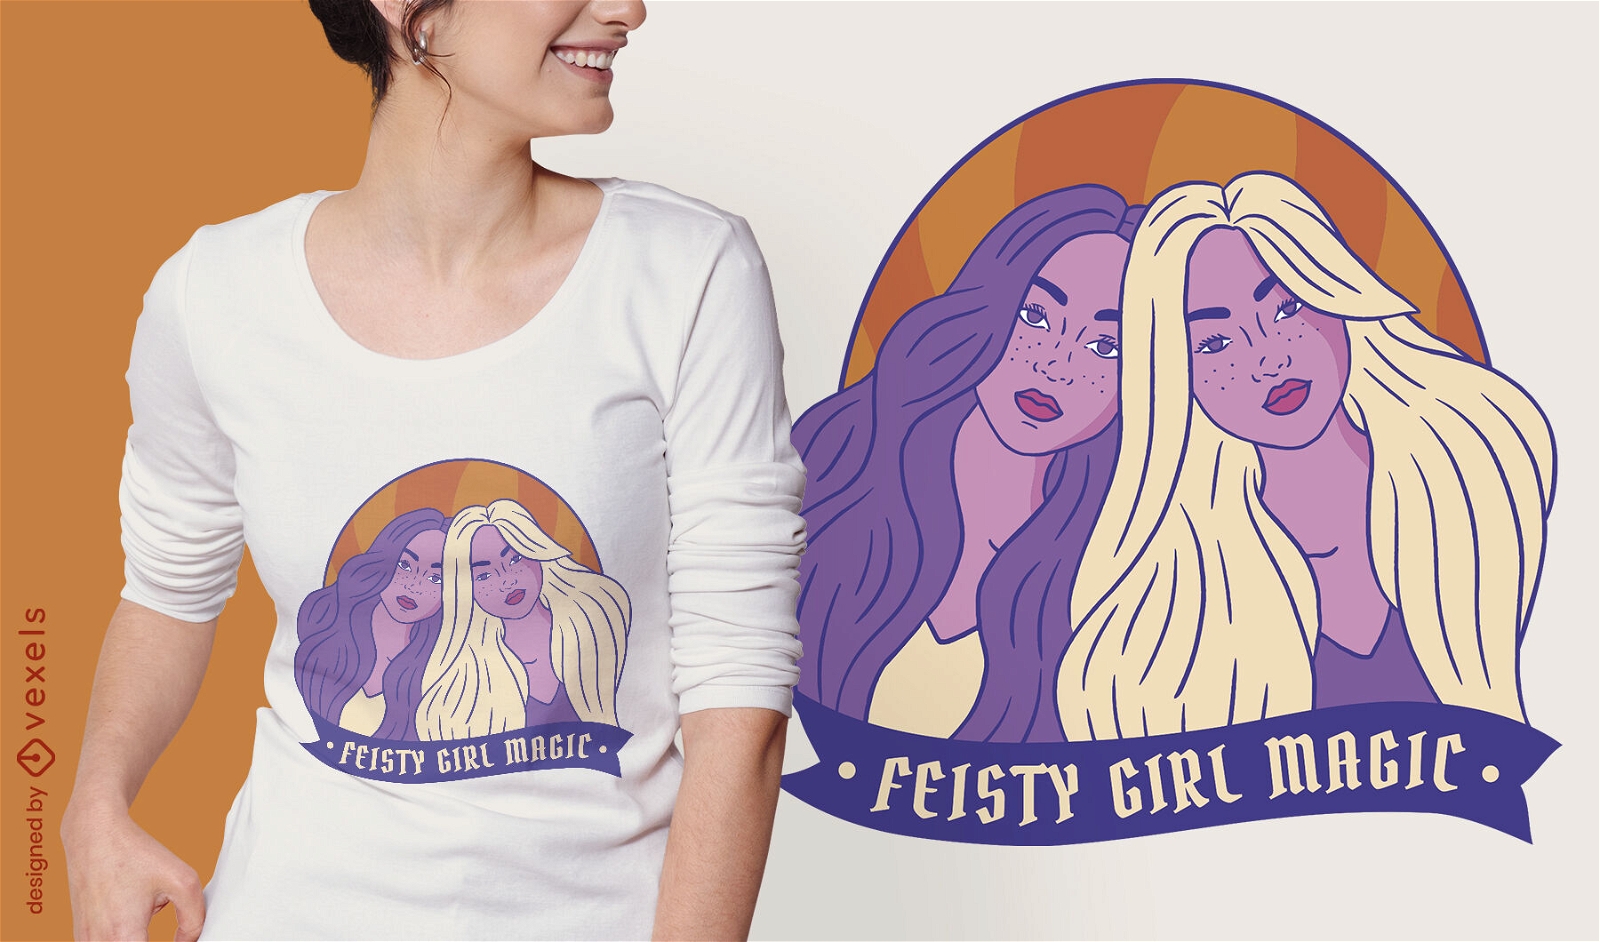 Dise?o de camiseta de amigas feministas de mujeres fuertes.